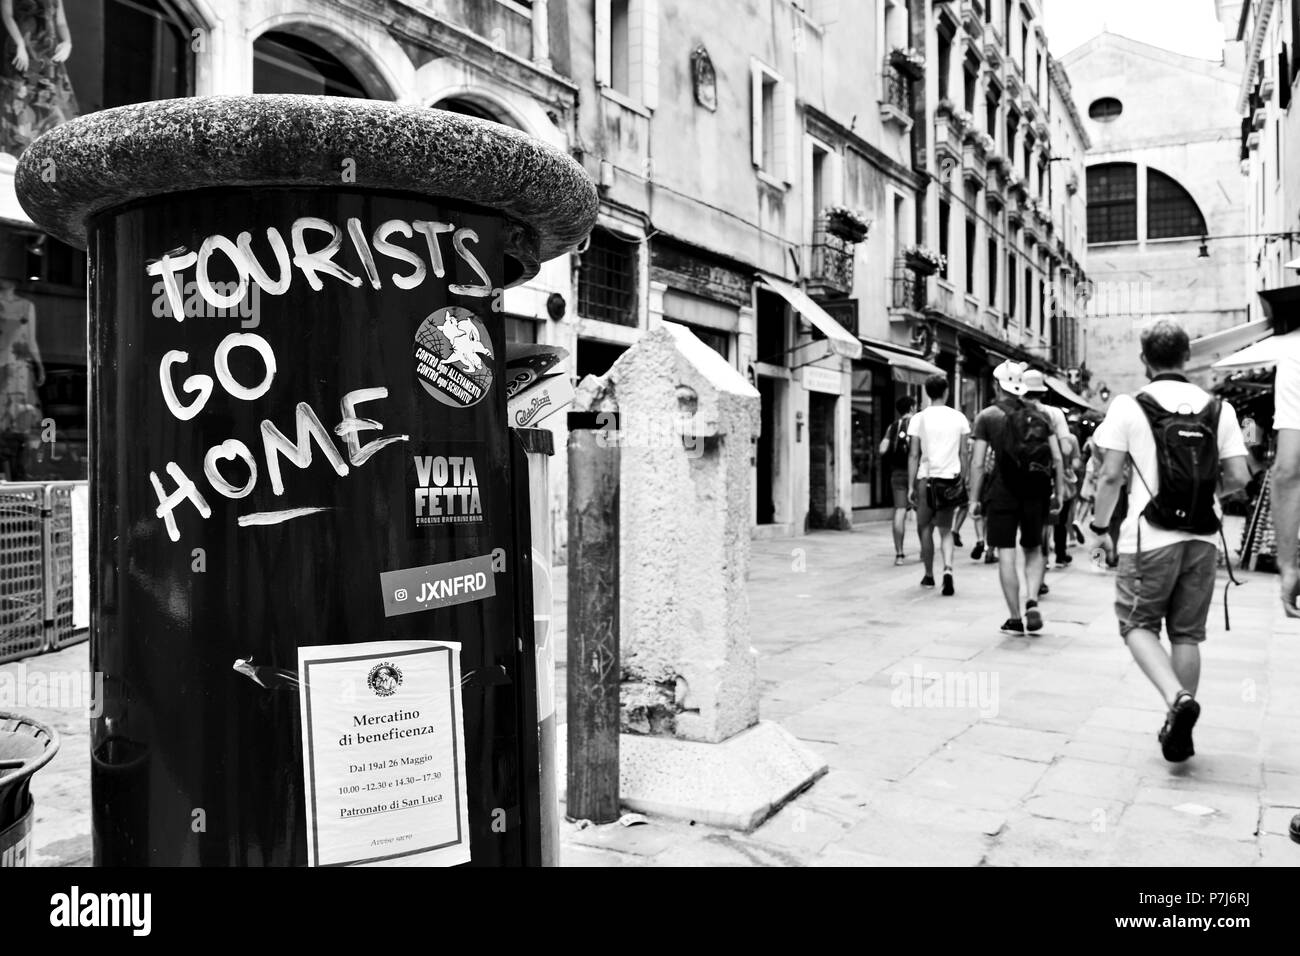 Venise, Italie - le 18 juin 2018 : 'touristes' go home graffito sur litterbin à Venise Banque D'Images